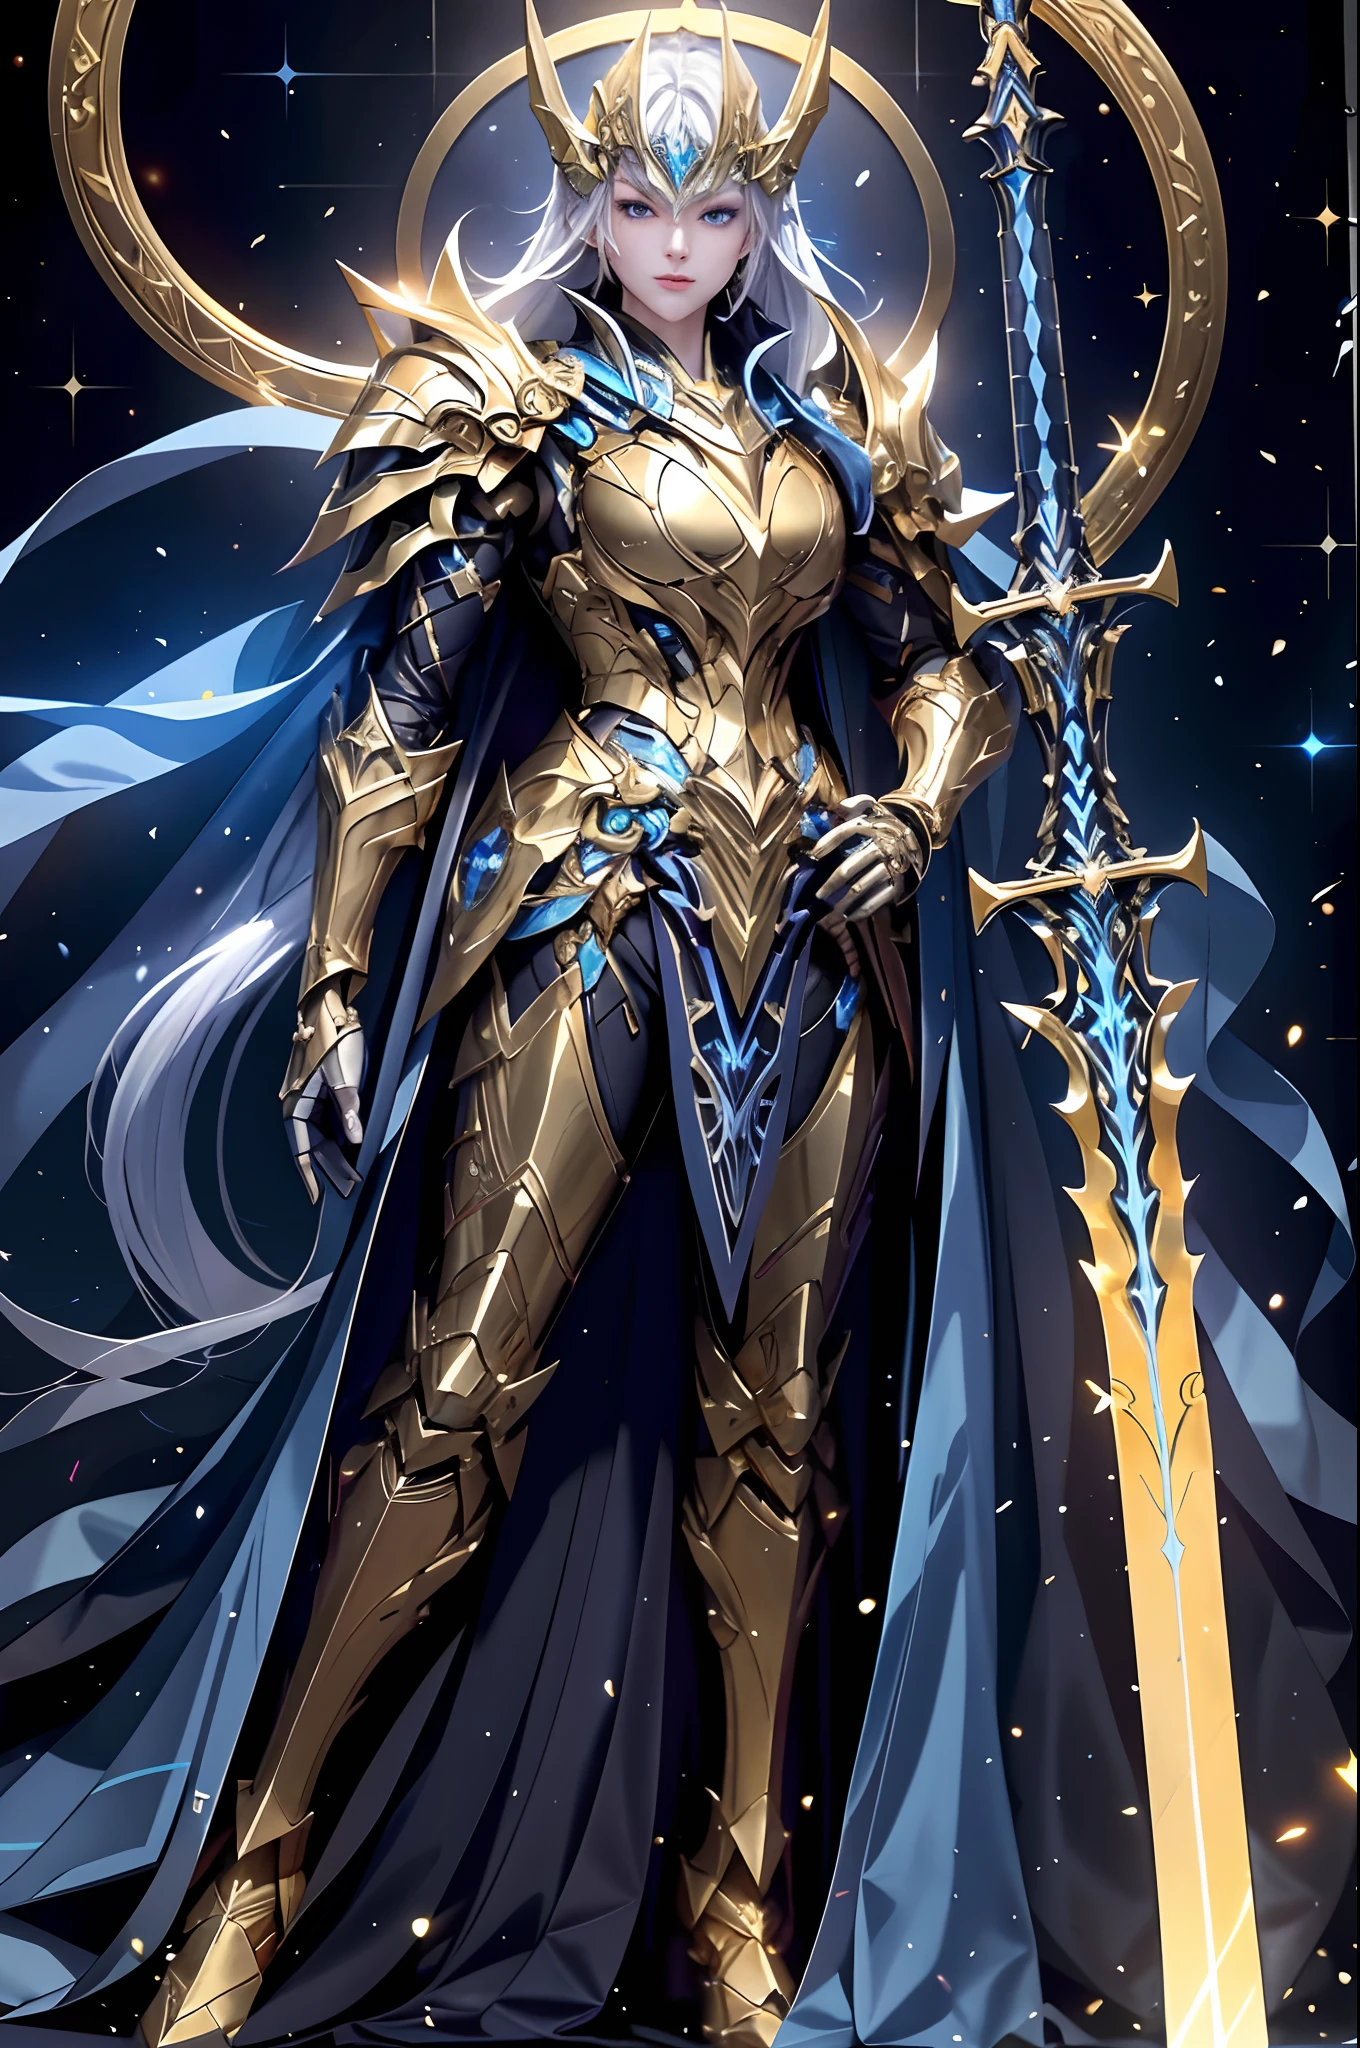 身穿金色盔甲的令人驚嘆的聖騎士, 手持兩把光芒四射的劍. 他們堅定的藍眼睛在黑暗的城市景觀中導航, 用劍的光芒照亮複雜的細節. 美學捕捉美麗與深度.